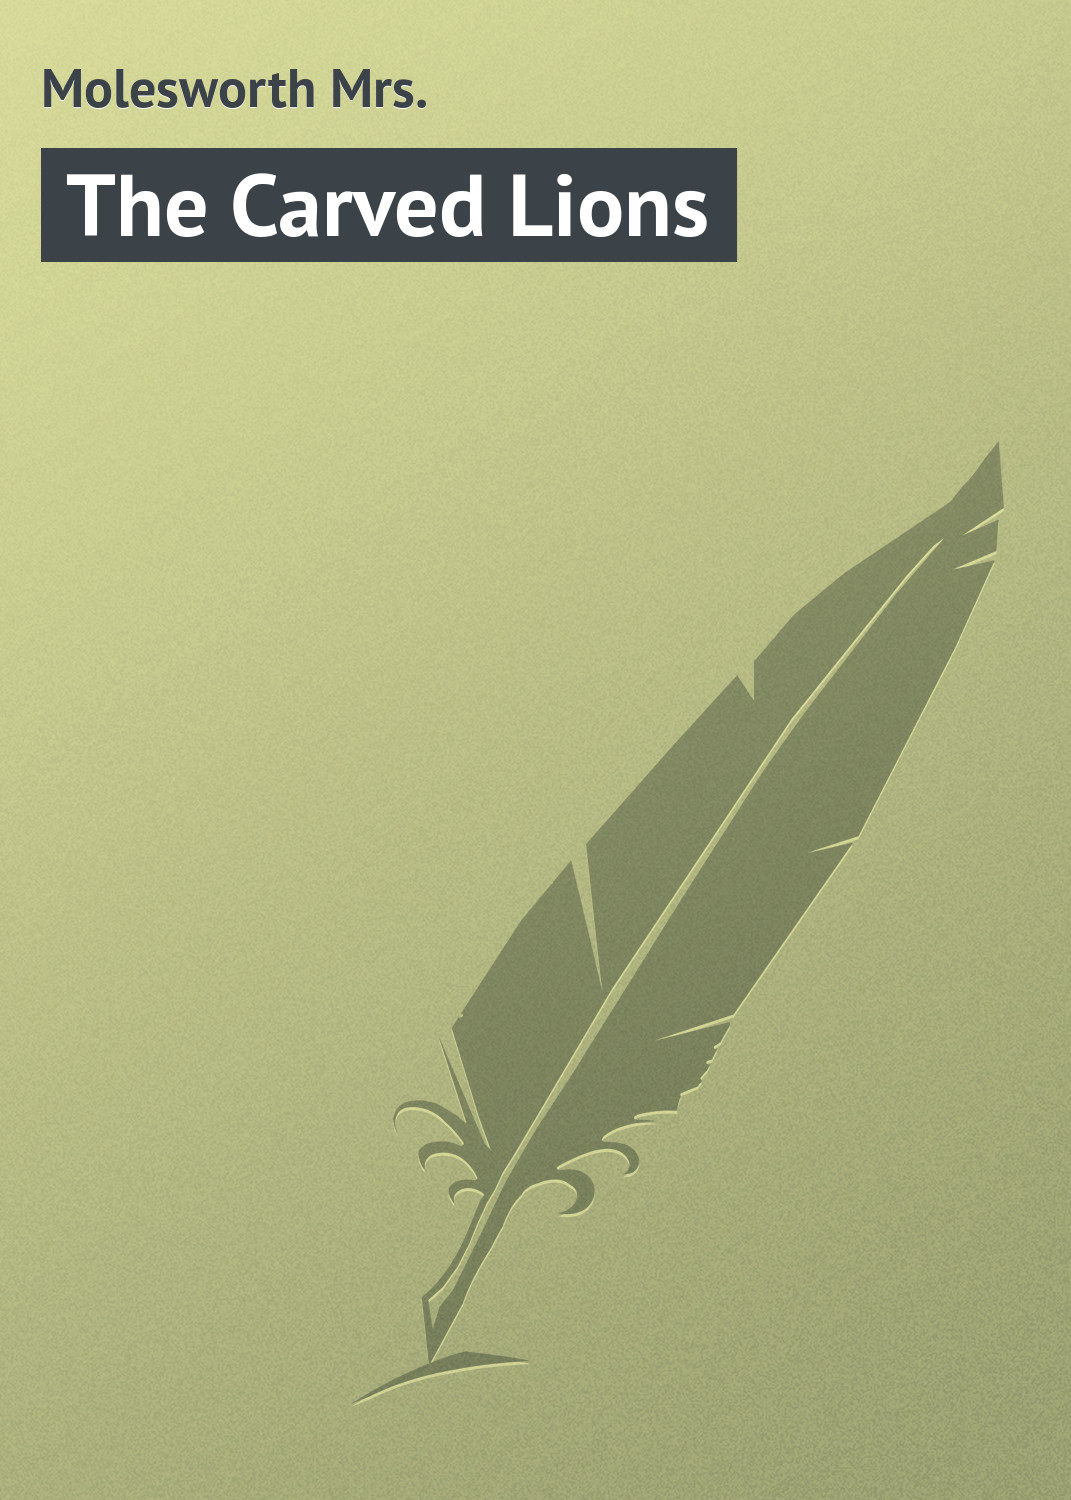 Книга The Carved Lions из серии , созданная Mrs. Molesworth, может относится к жанру Зарубежная классика. Стоимость электронной книги The Carved Lions с идентификатором 23168475 составляет 5.99 руб.